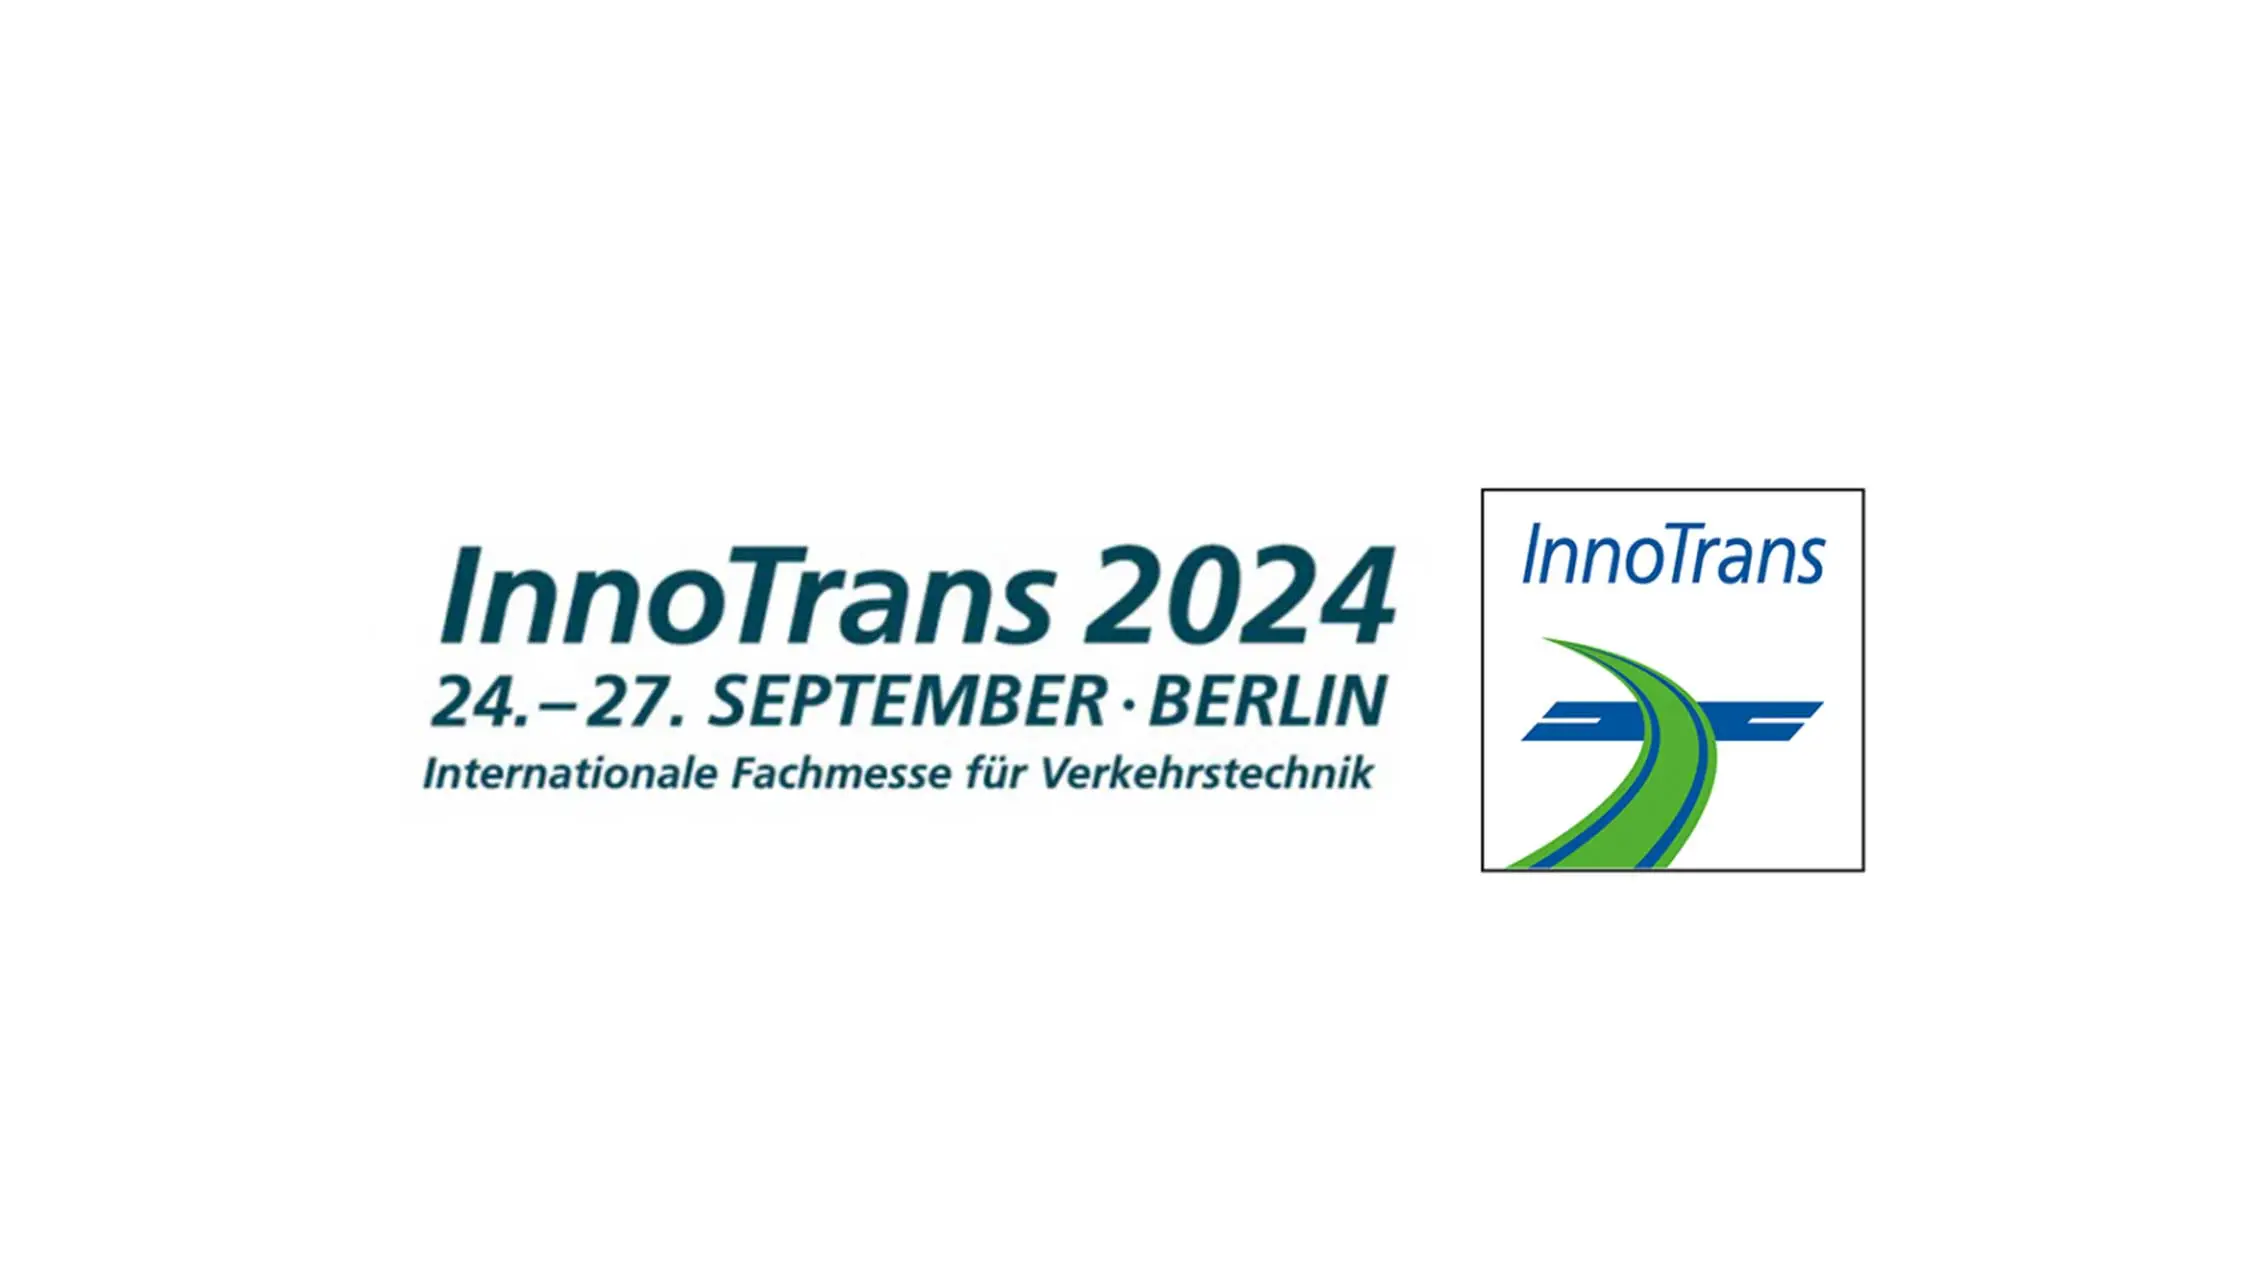 InnoTrans 2024 in Berlin